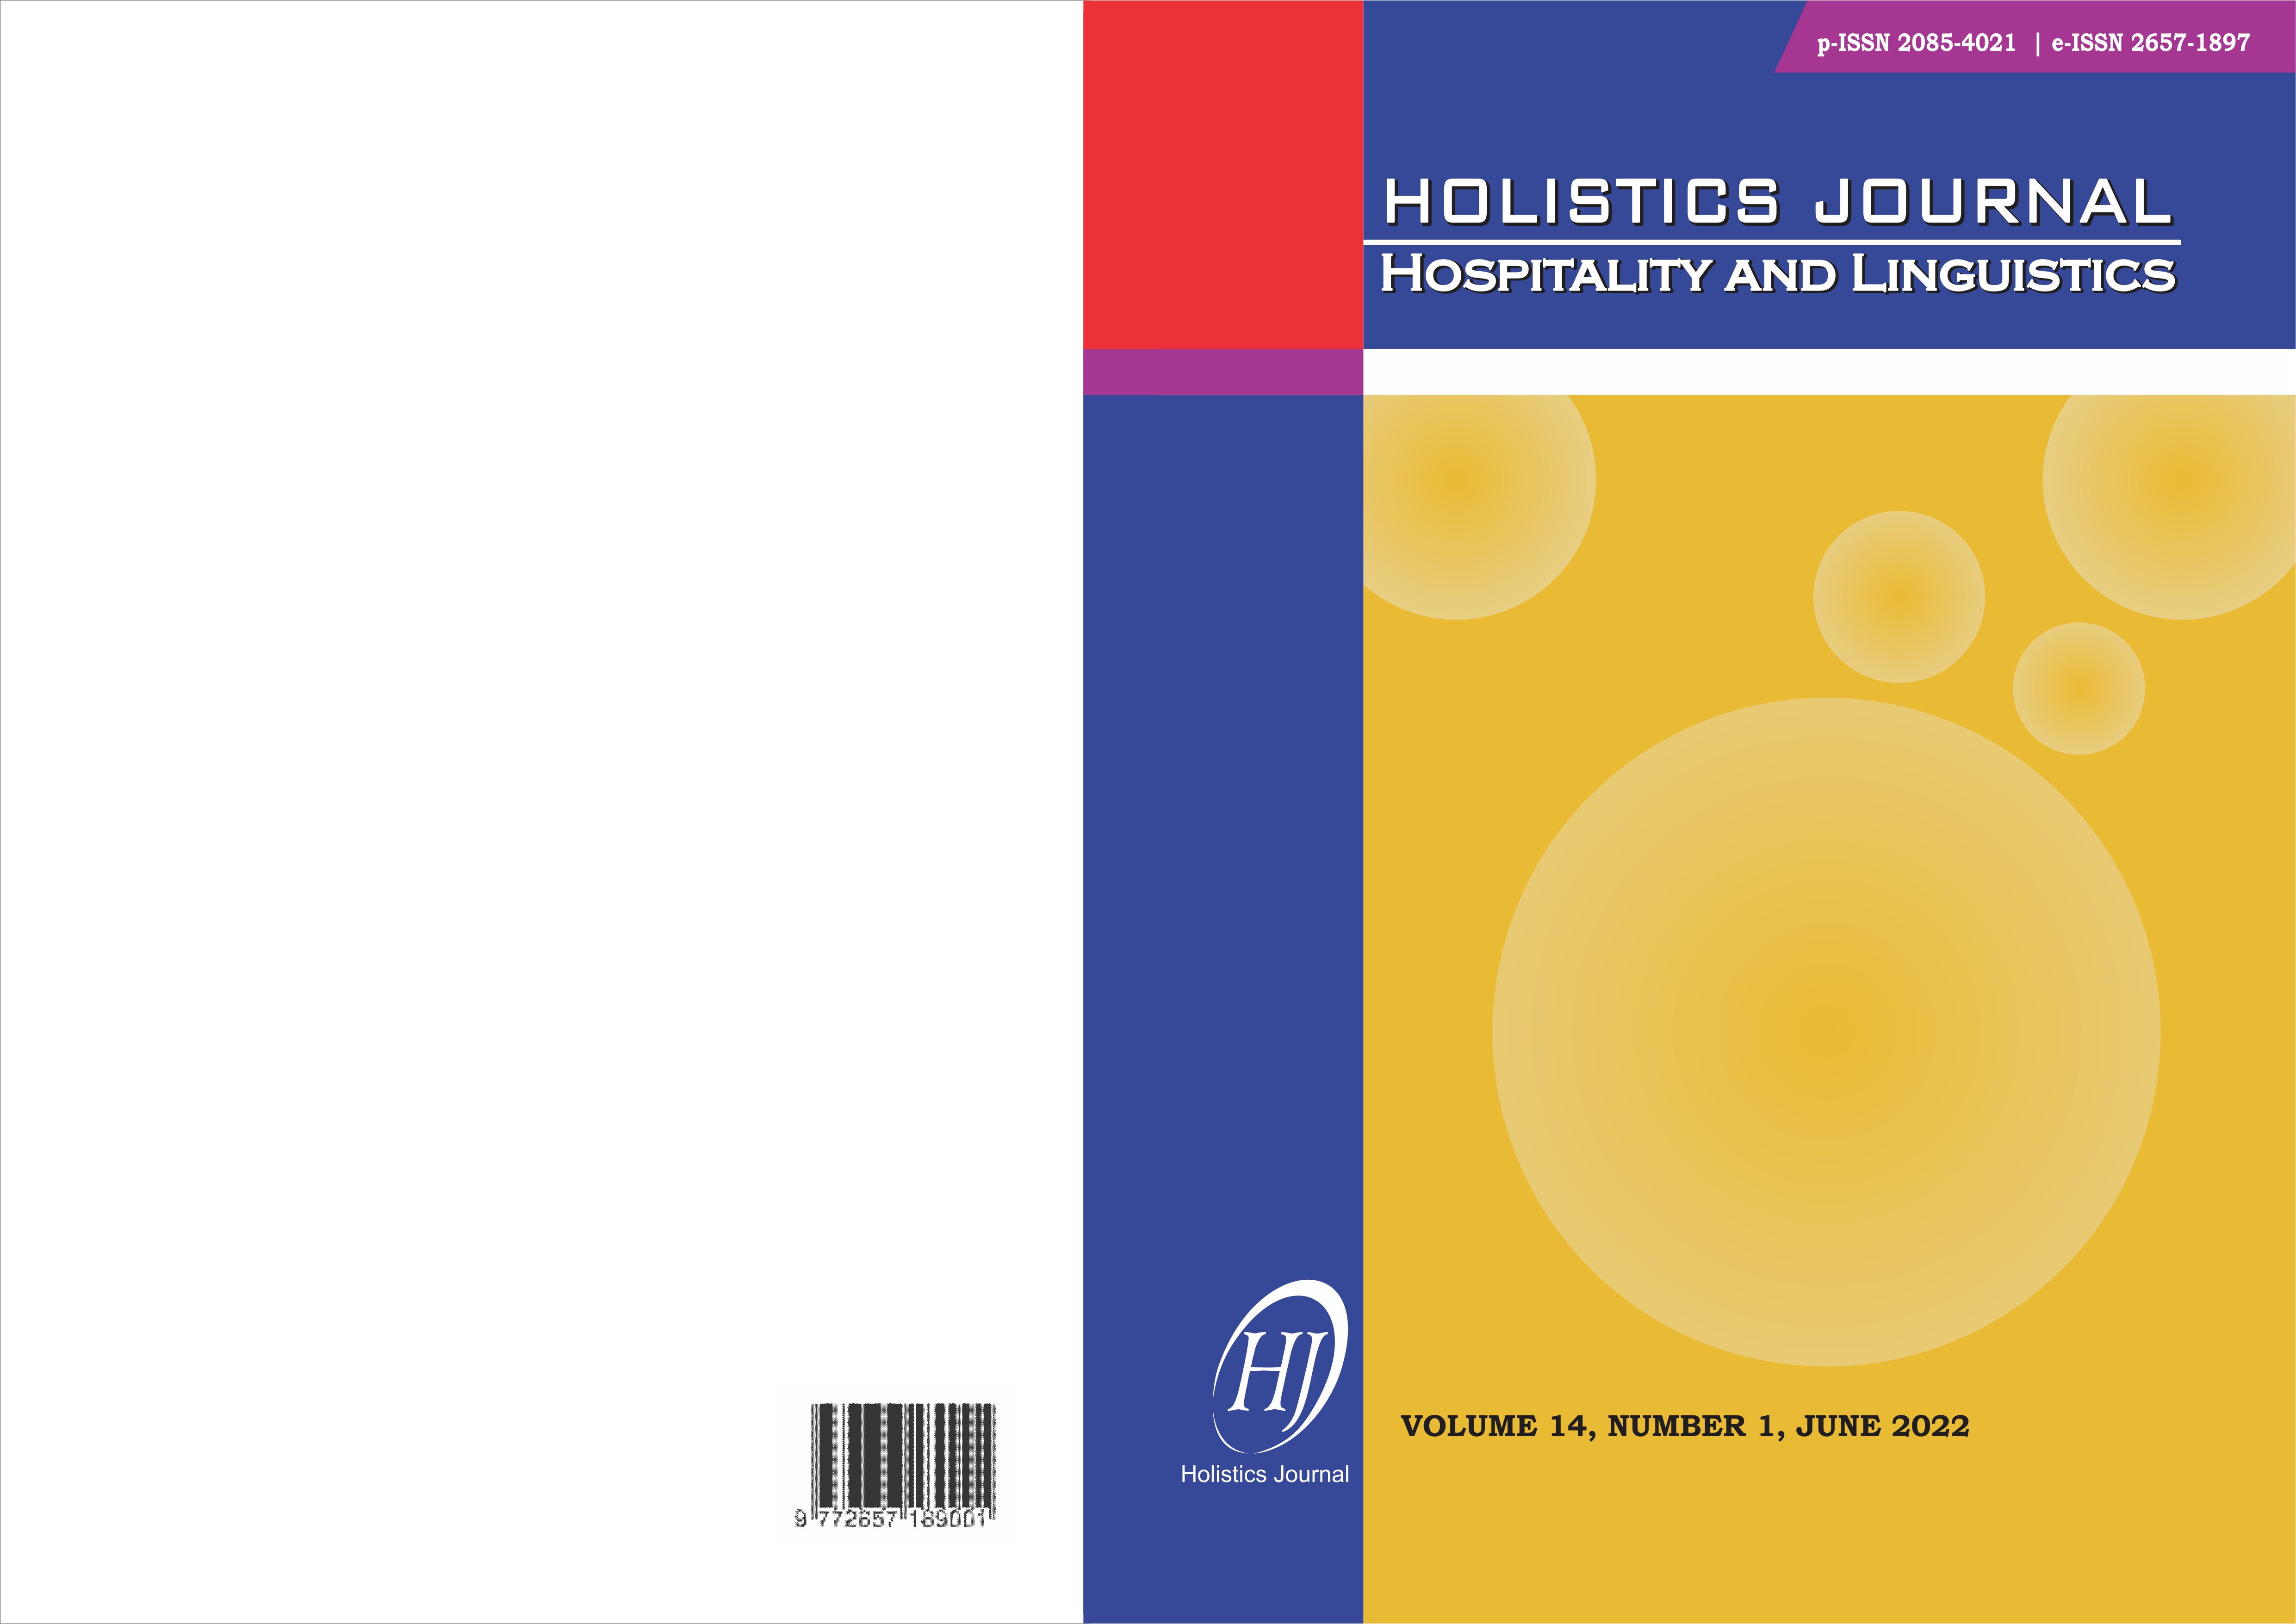 					View Vol. 14 No. 1 (2022): HOLISTICS JOURNAL: HOSPITALITY AND LINGUISTICS
				